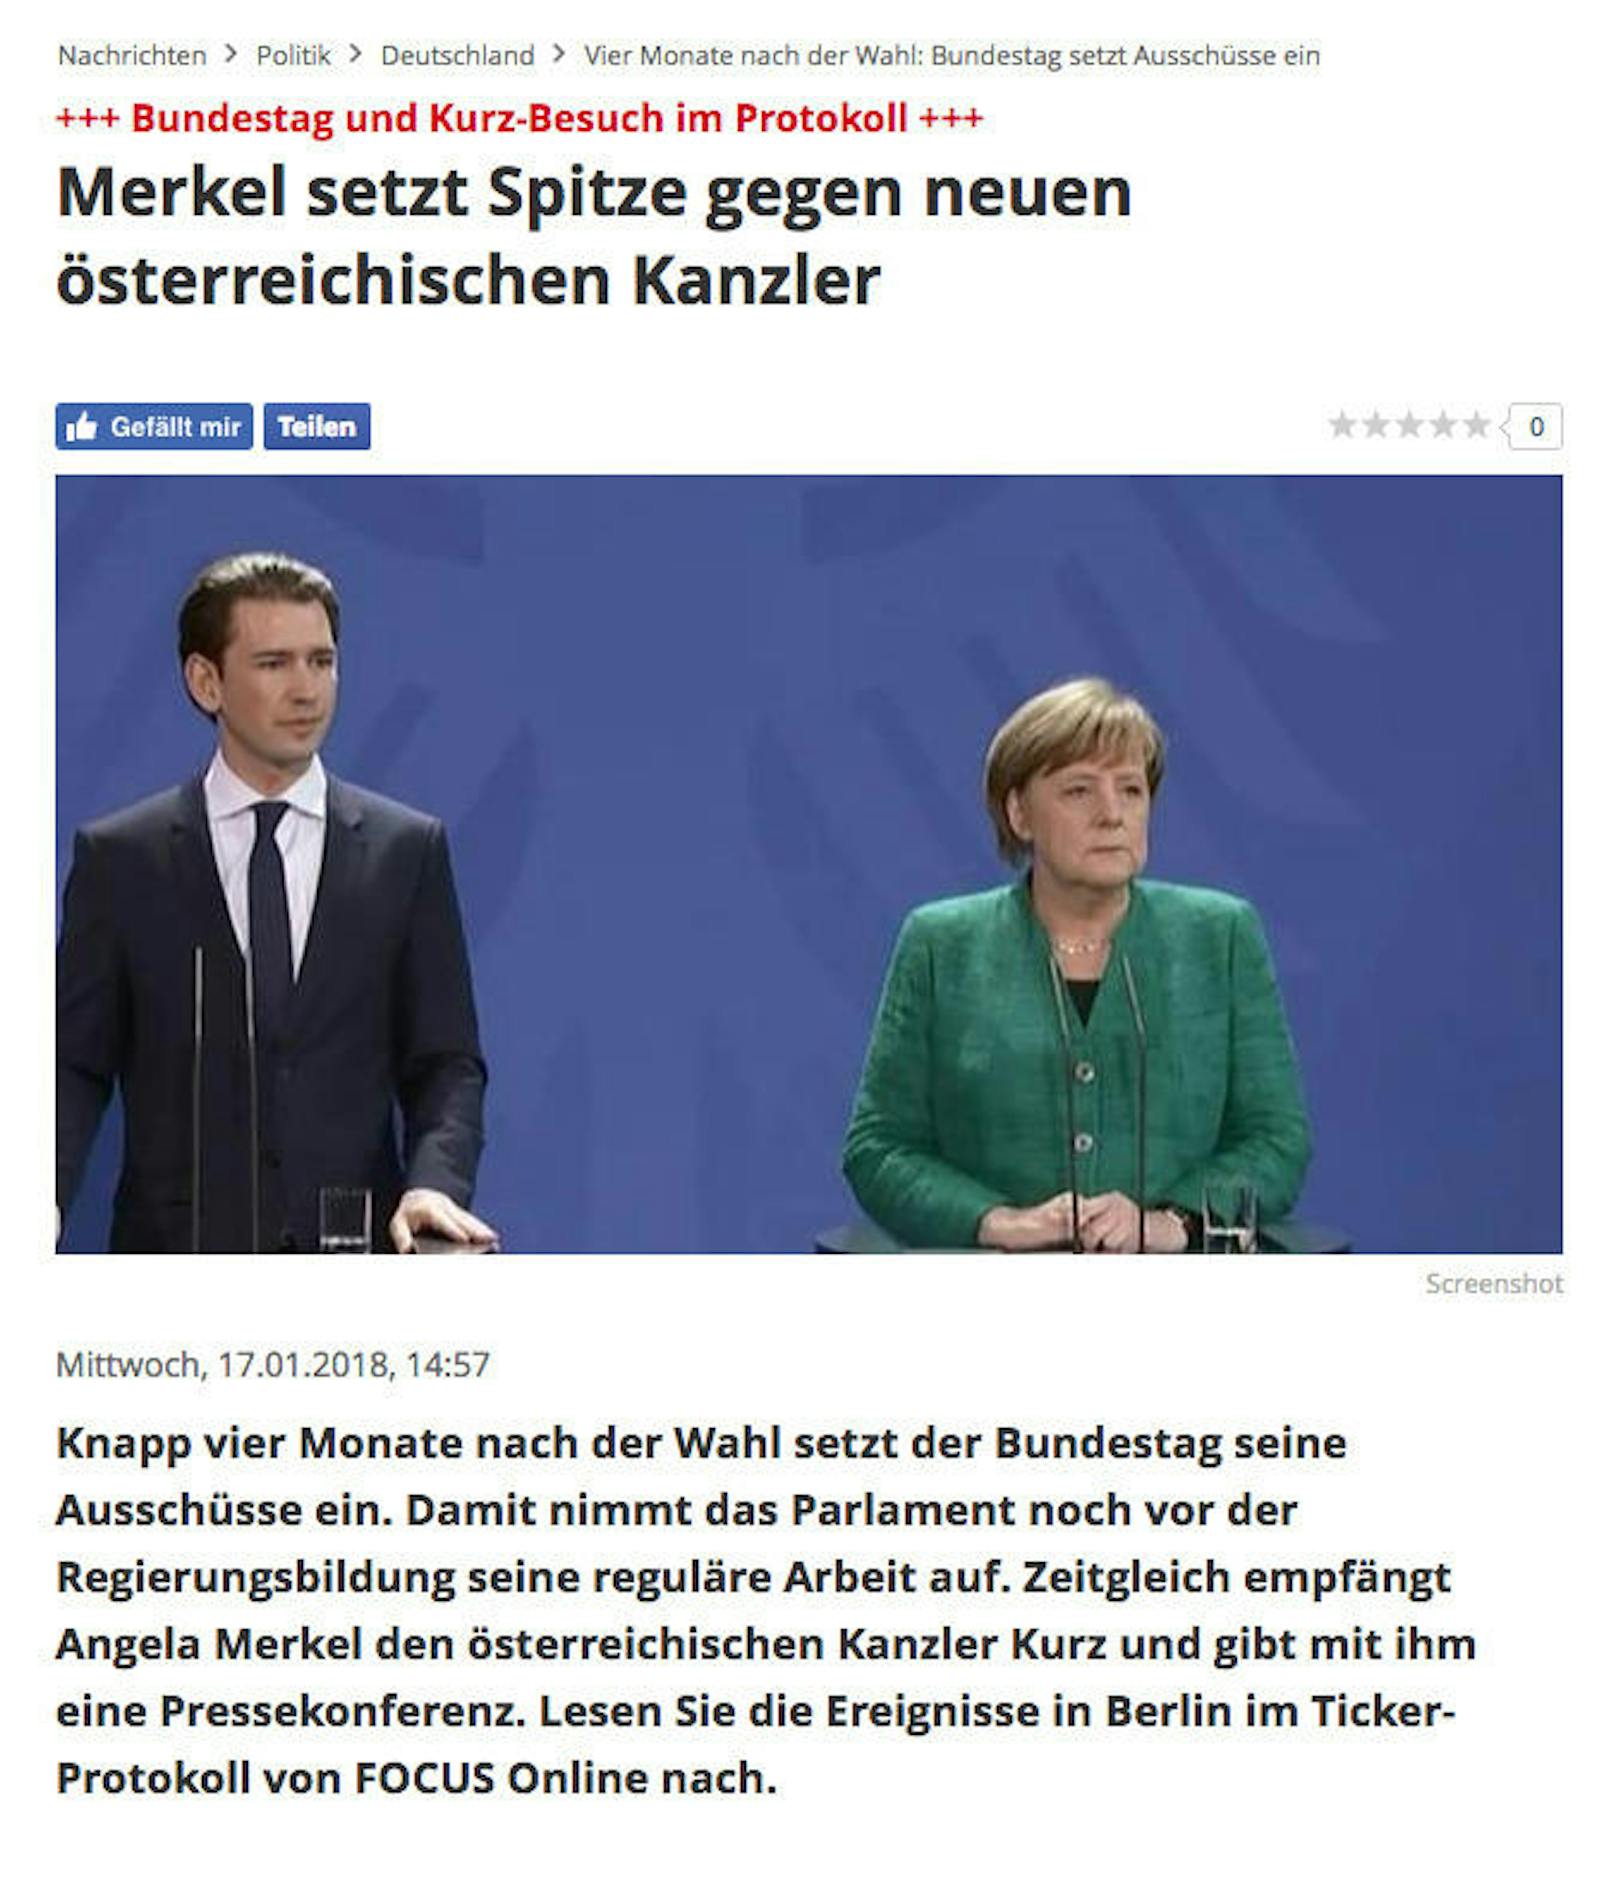 Das Magazin Focus betonte Merkels launige Bemerkung gegen Österreichs Mautklage.